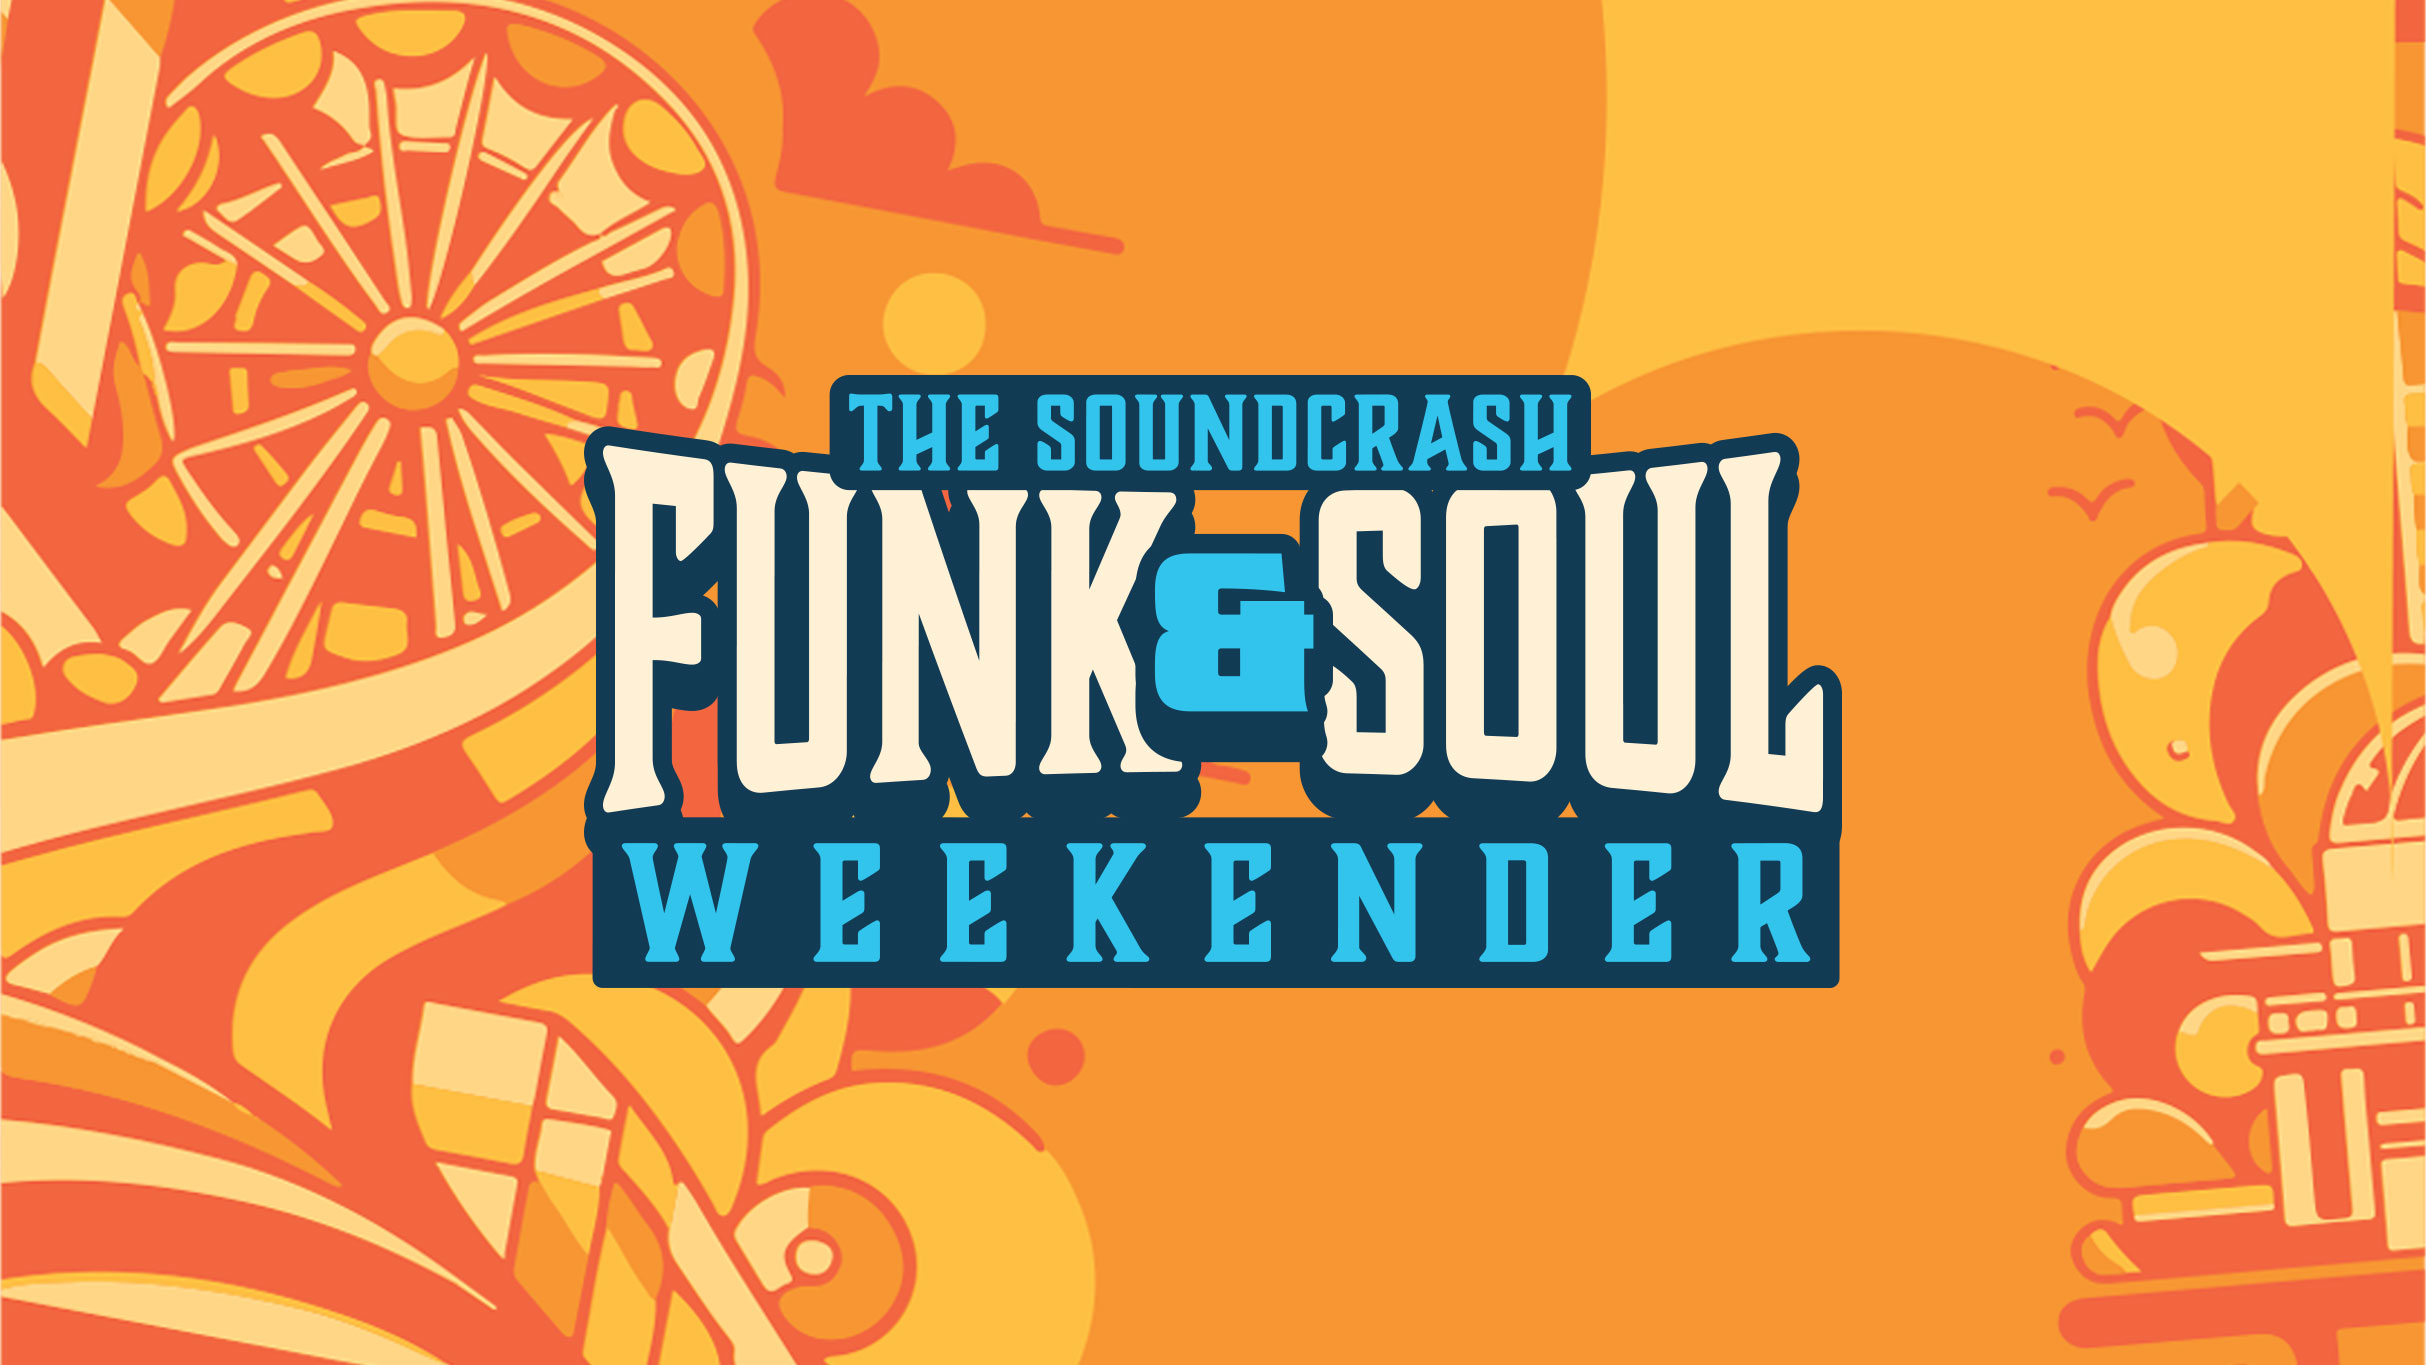 Funk & Soul Weekender